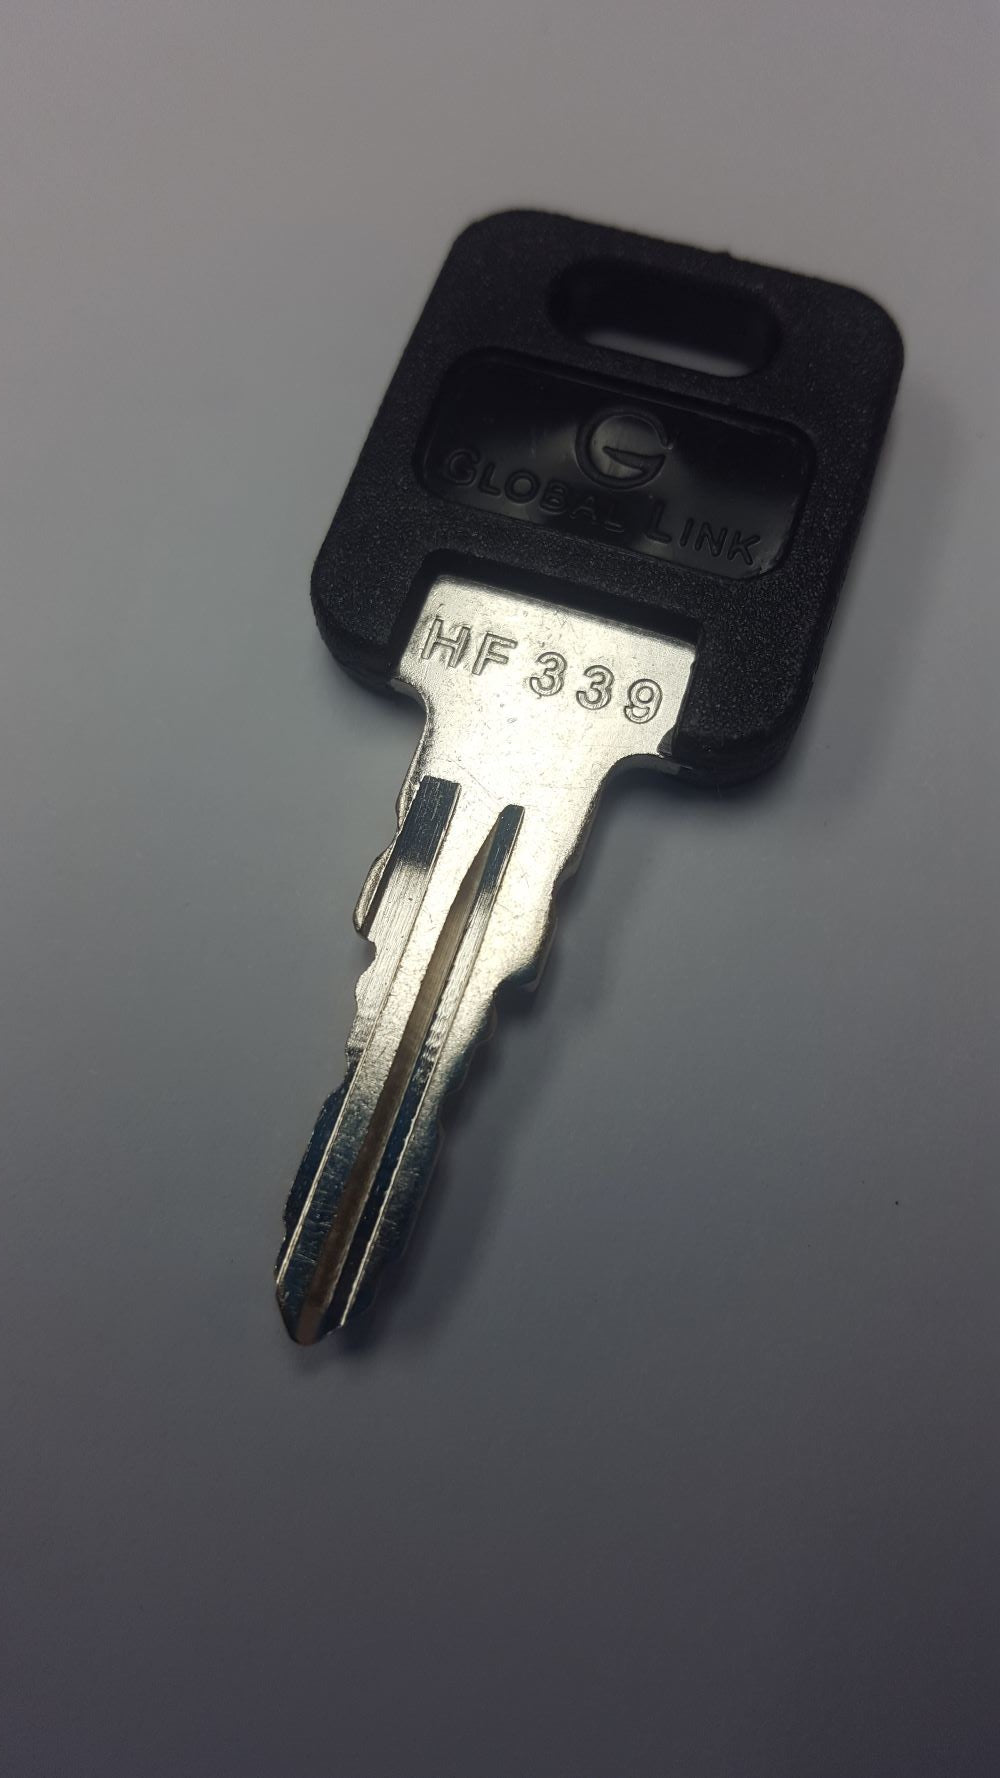 CPG KEY-HF-339 Pre-cut Stamped FIC Replacemnt HF339 Key